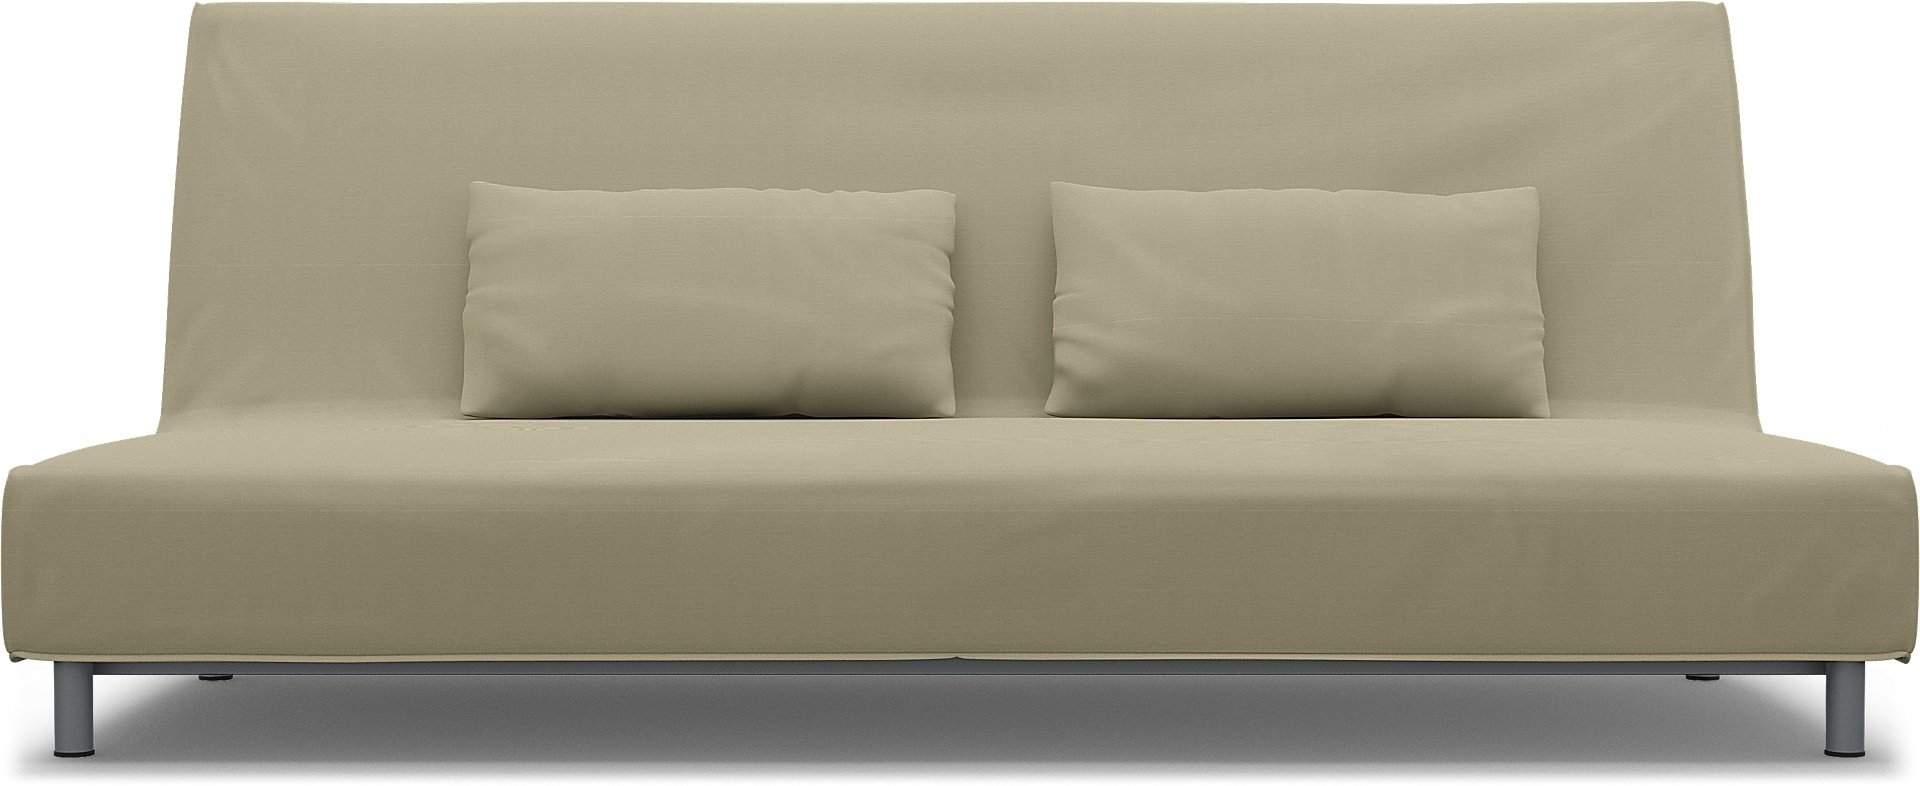 IKEA - Beddinge Sofa Bed Cover, Sand Beige, Cotton - Bemz